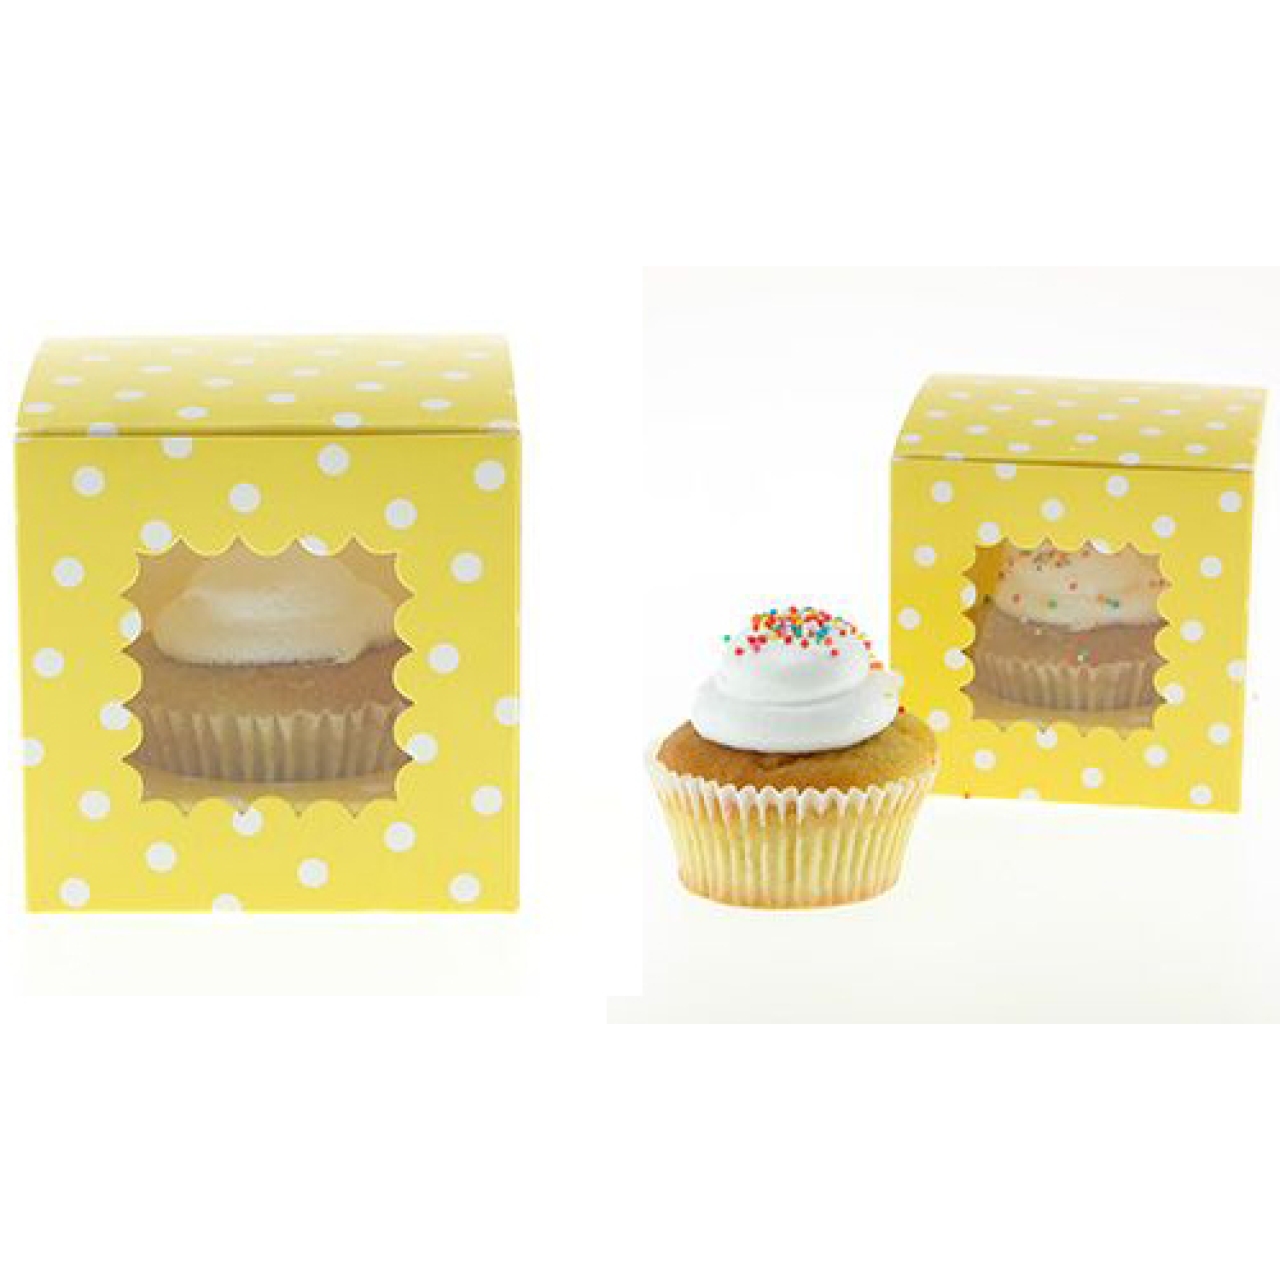 Cupcake-Boxen Gelb mit Punkten, 6 Stück